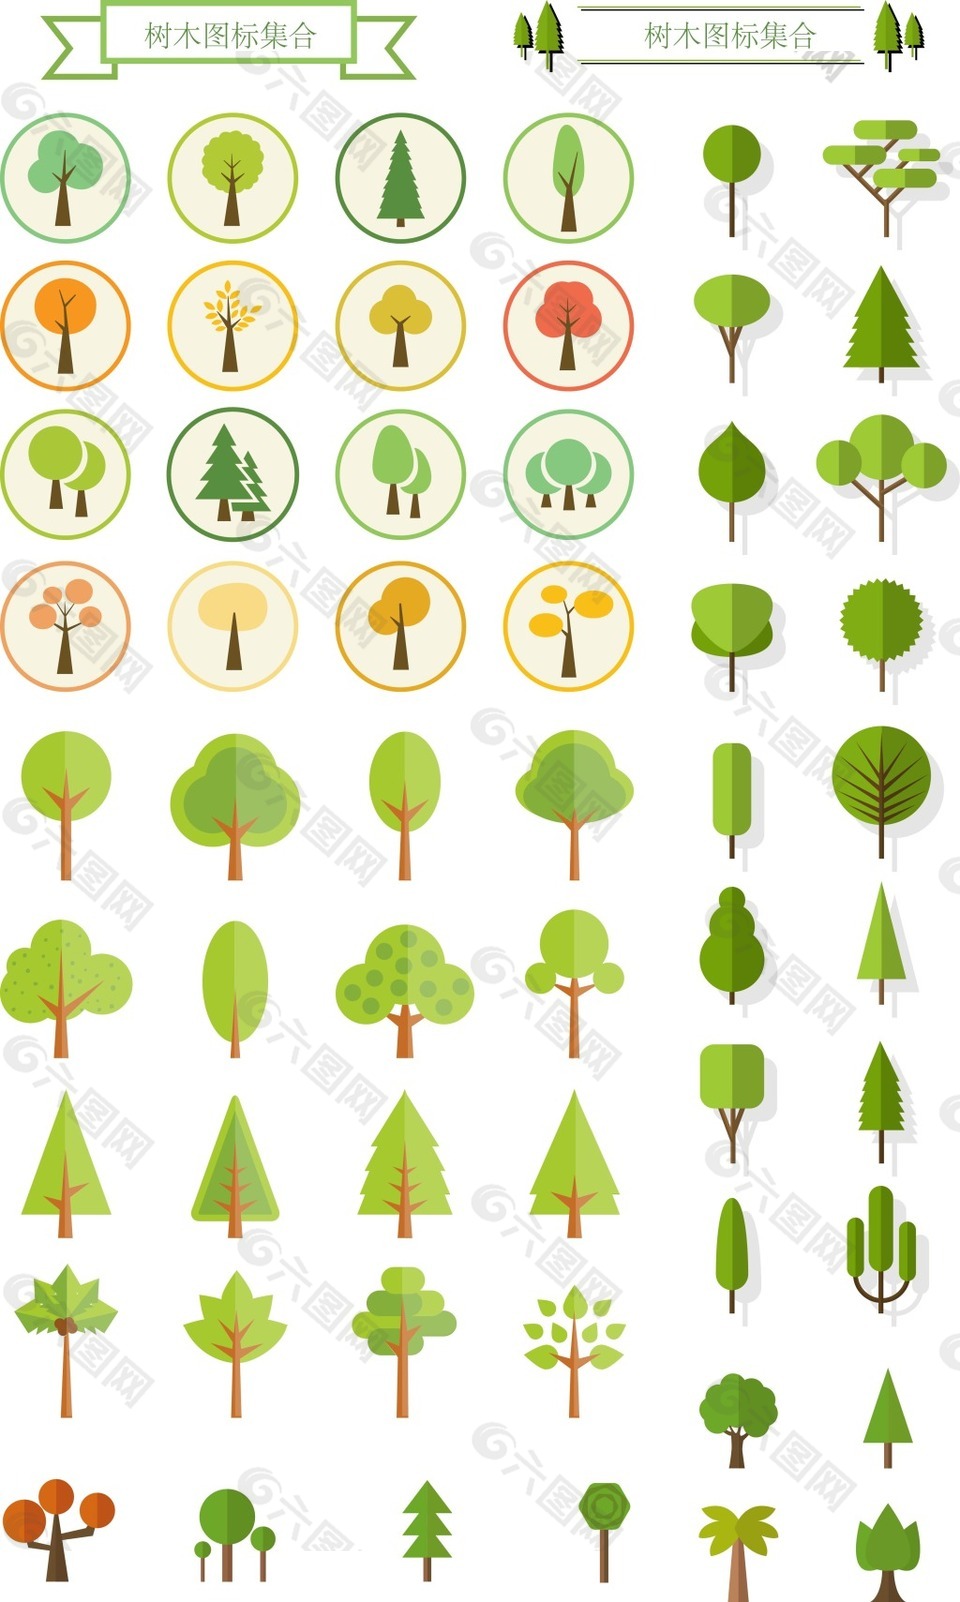 包图网_71734绿色树木图标素材